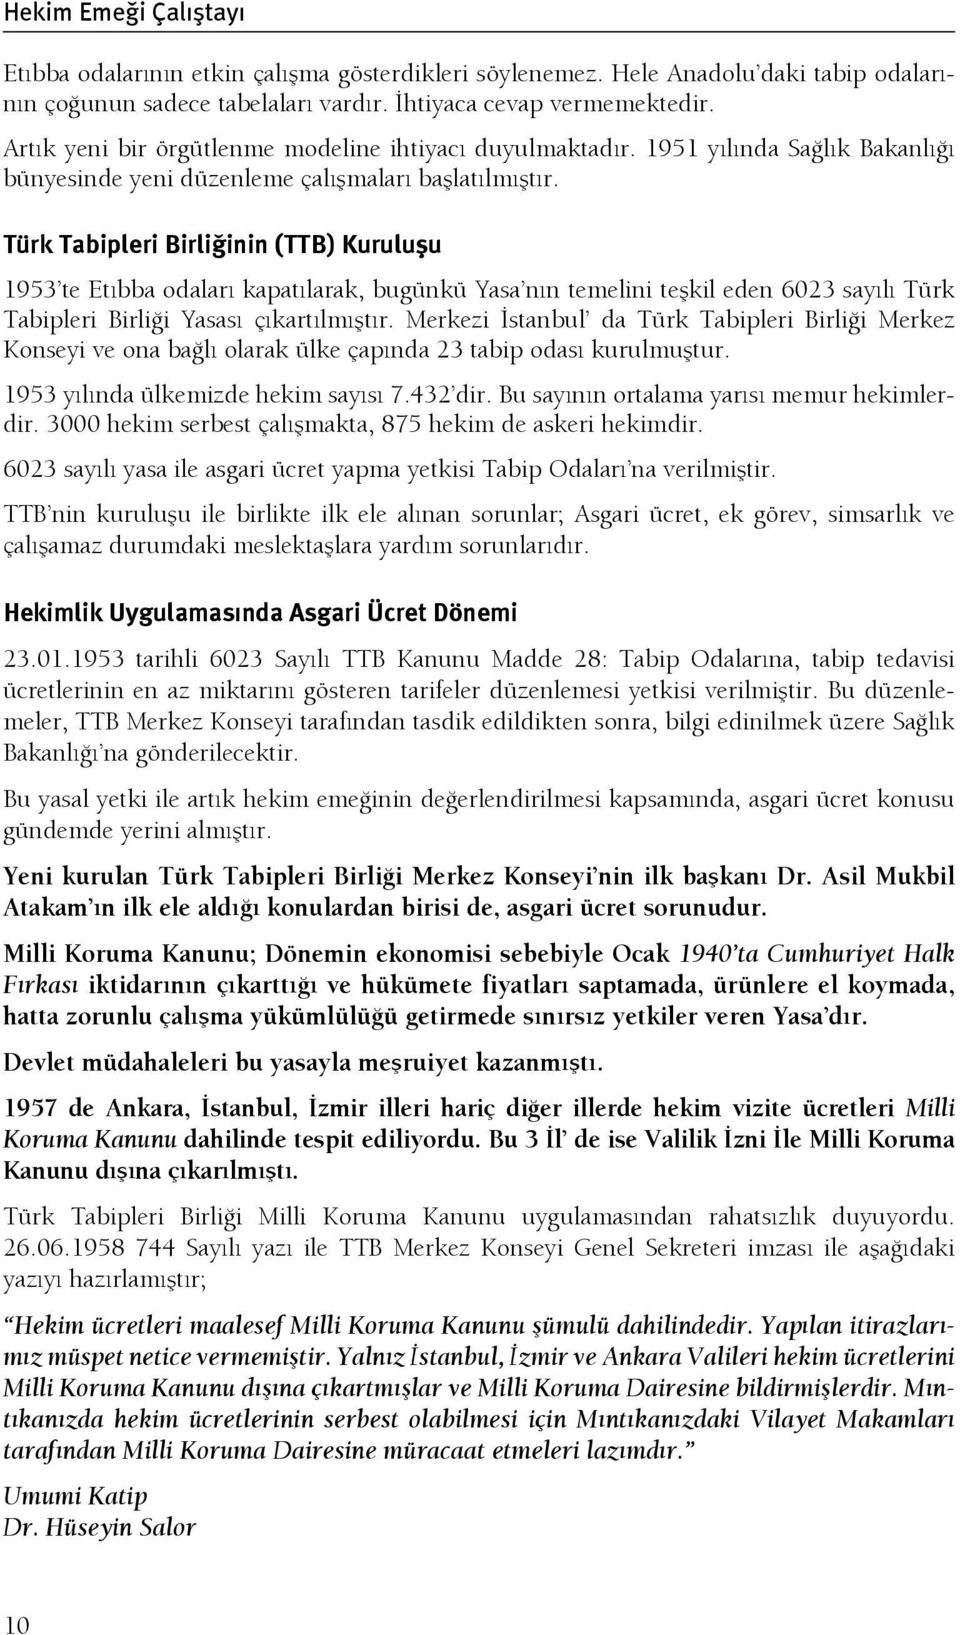 Türk Tabipleri Birliğinin (TTB) Kuruluşu 1953 te Etıbba odaları kapatılarak, bugünkü Yasa nın temelini teşkil eden 6023 sayılı Türk Tabipleri Birliği Yasası çıkartılmıştır.